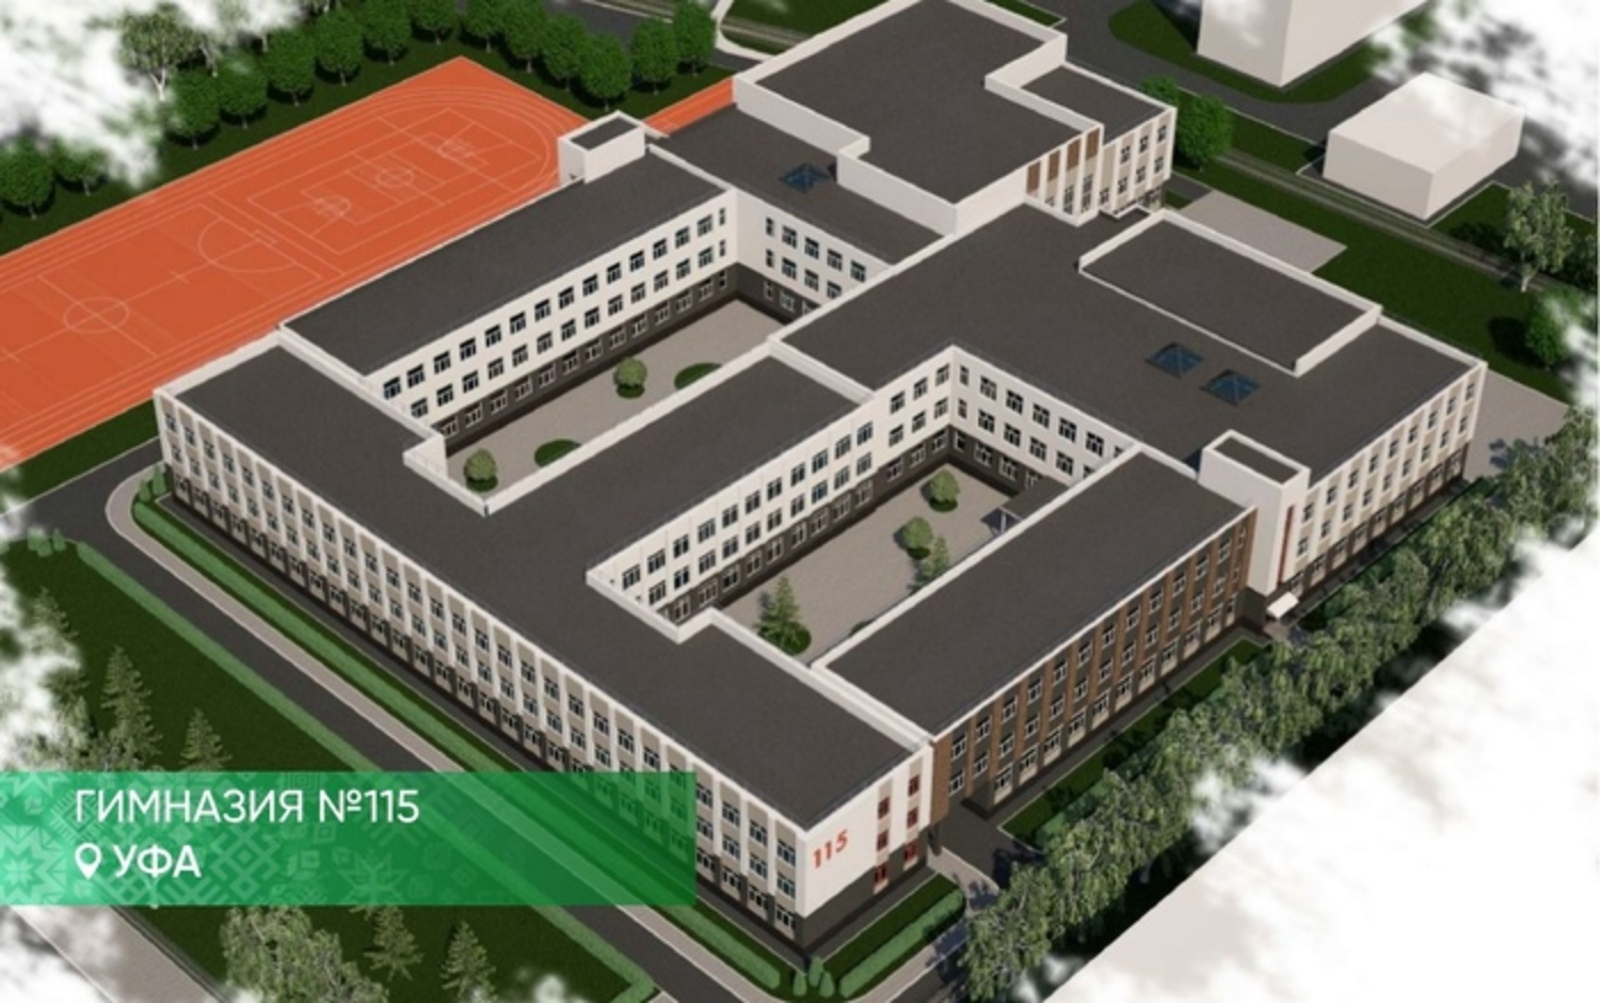 Строитель детского онкоцентра получил контракт на реконструкцию гимназии в Уфе